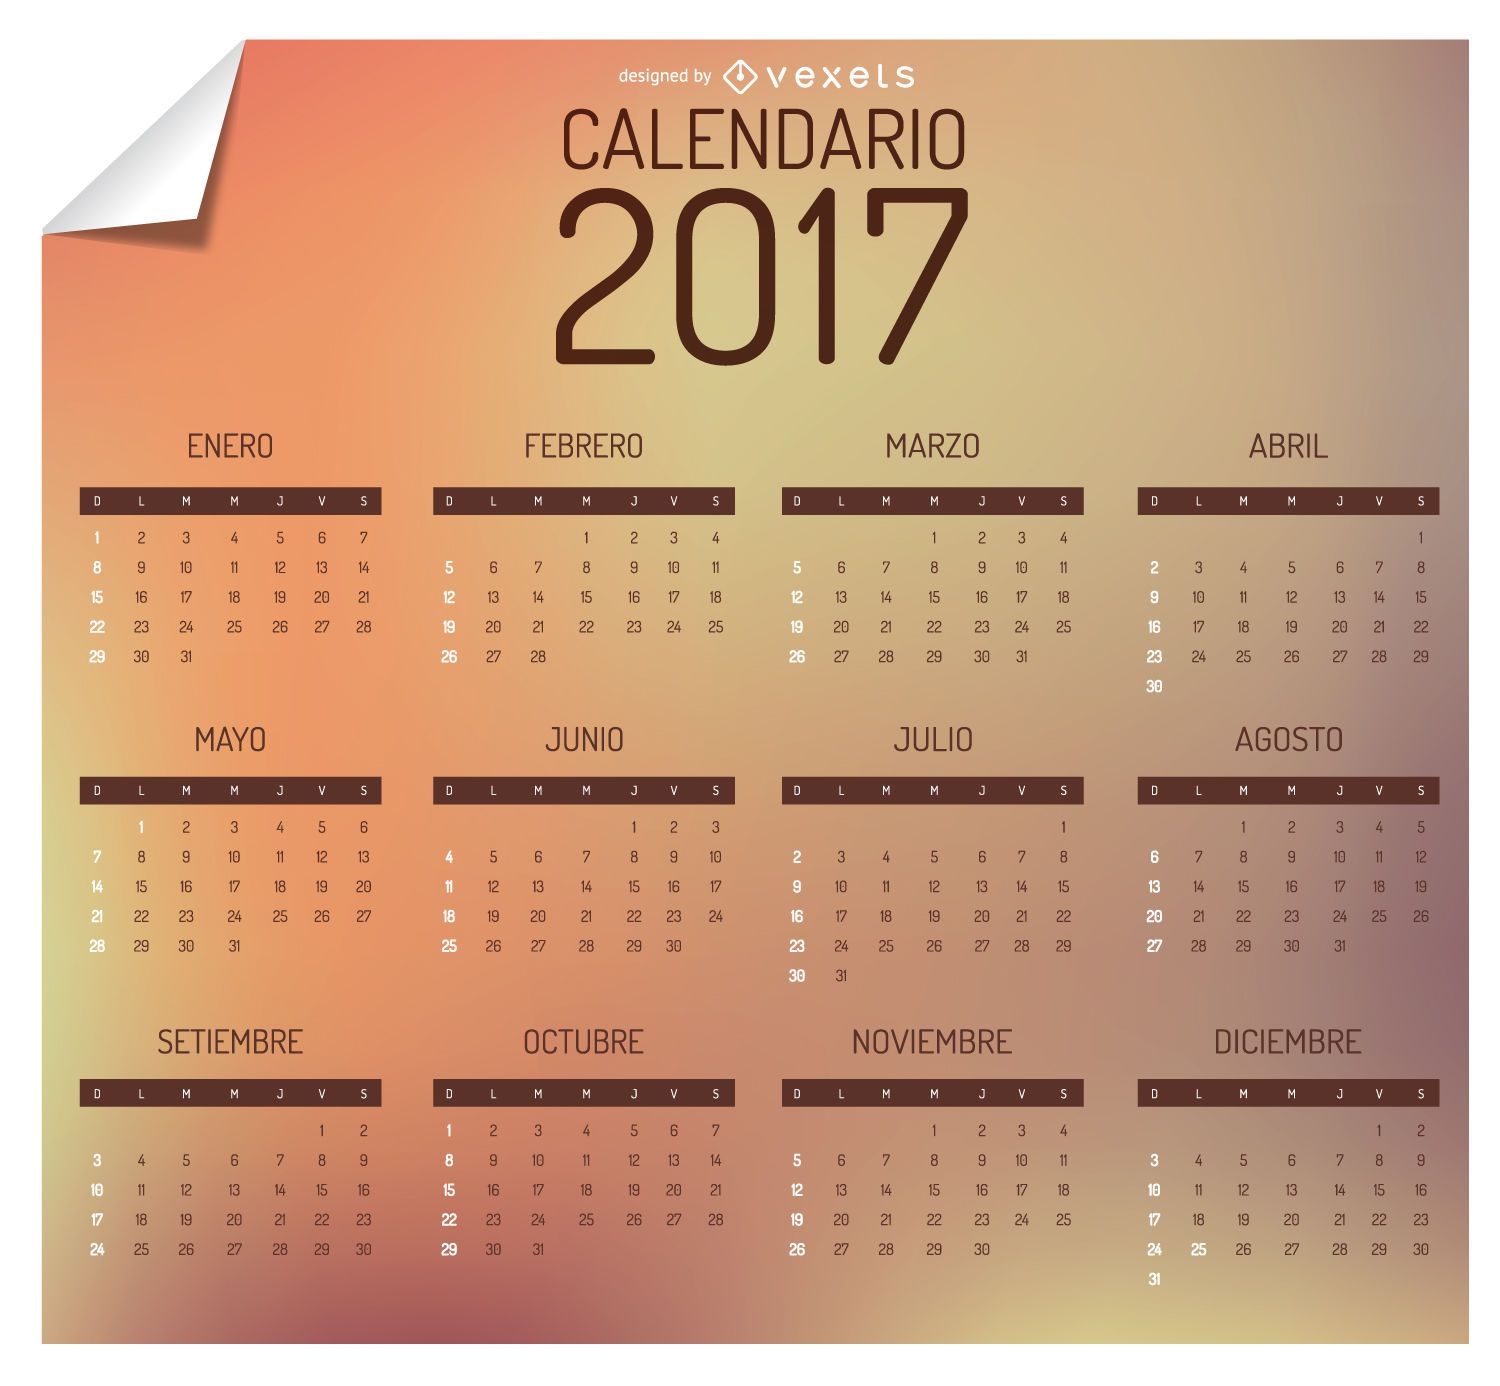 Calendario 2017 en espa?ol